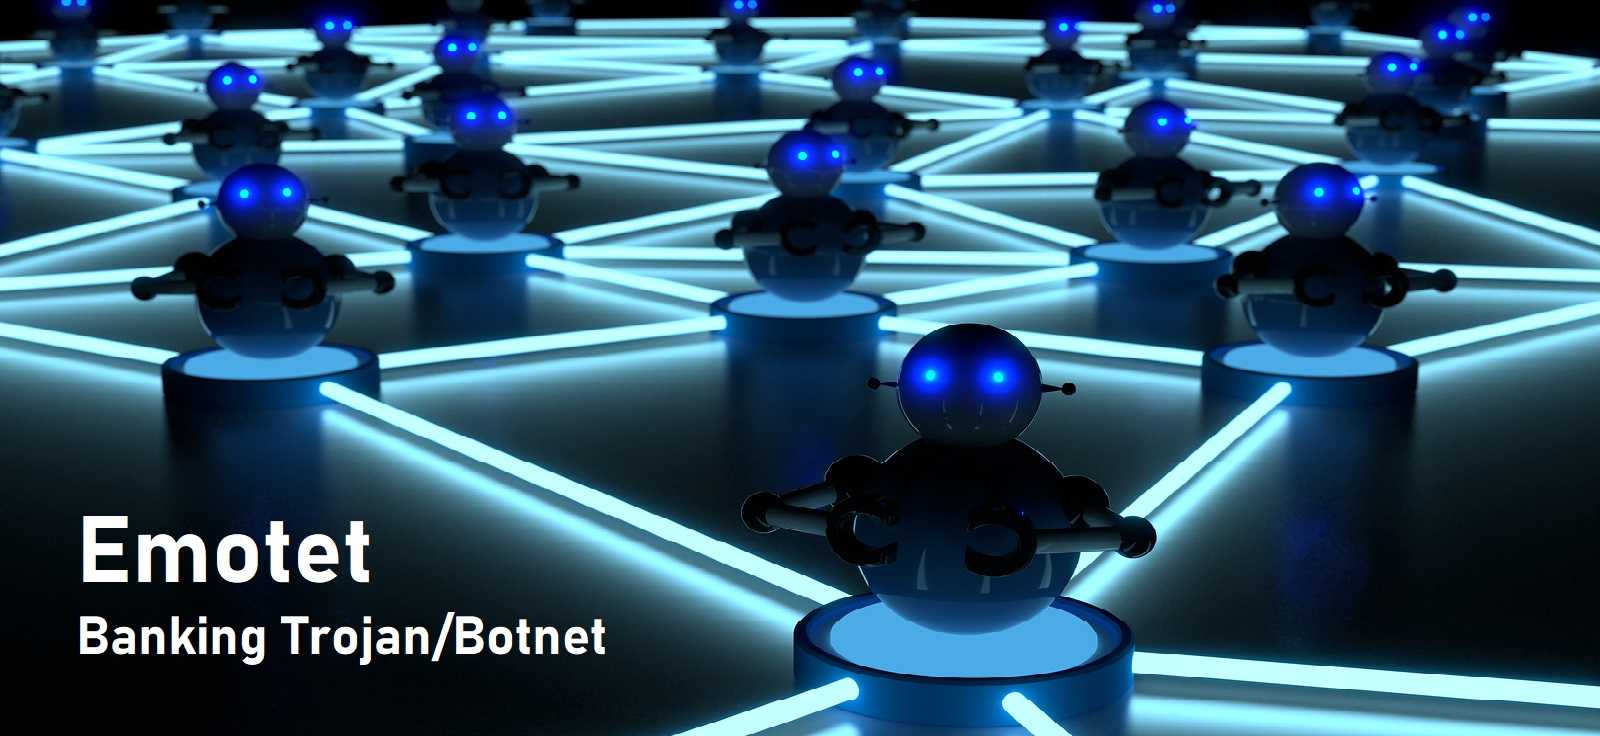 Emotet Botnets Infiltrate 61% Of Phishing Emails